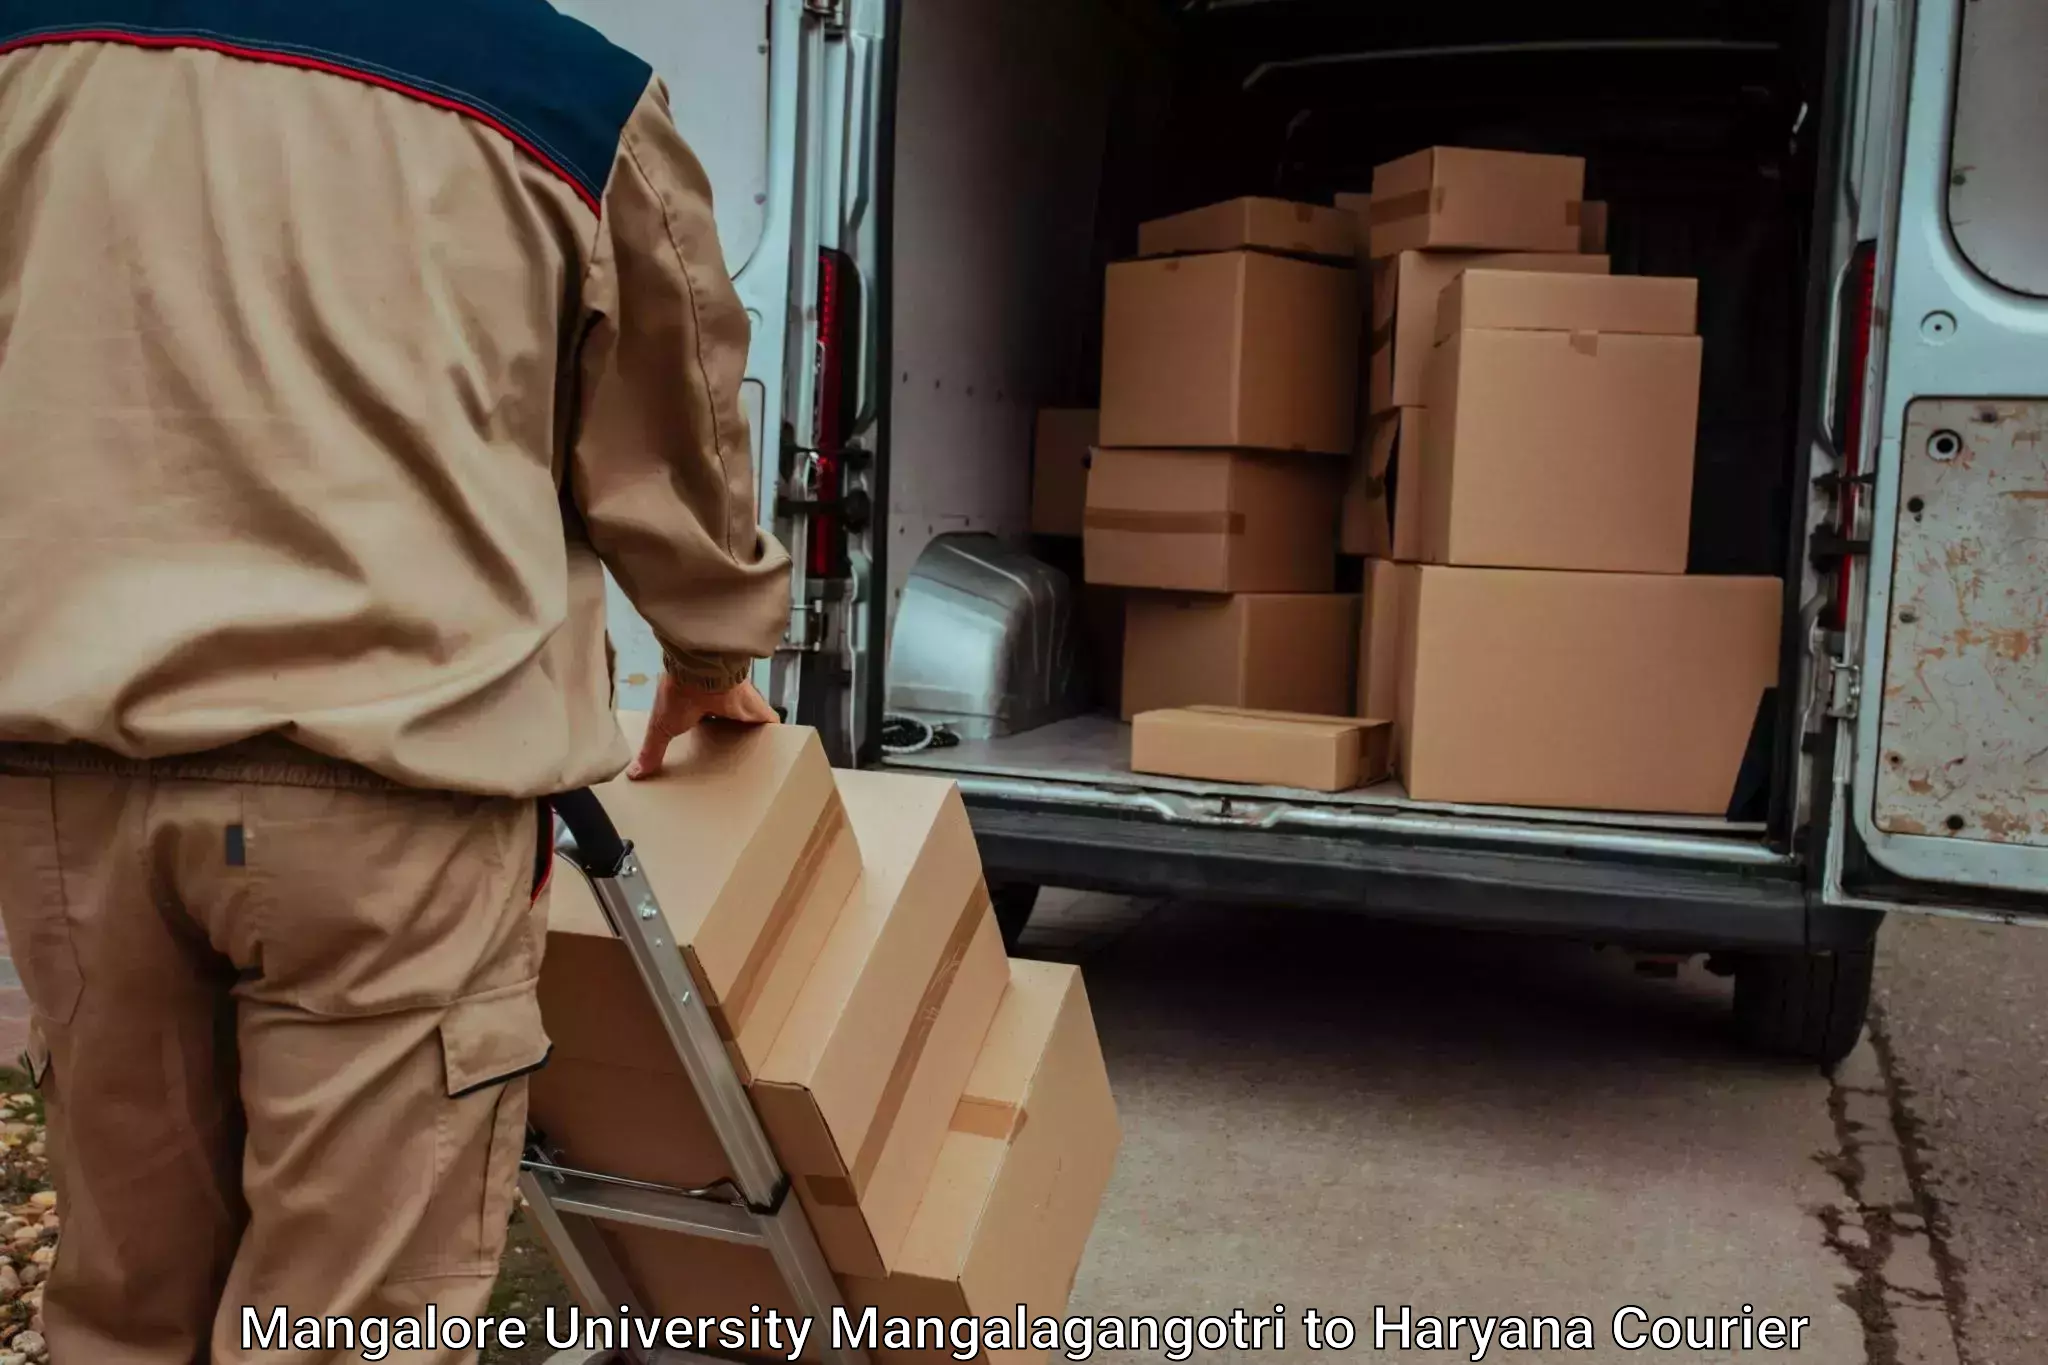 Luggage shipment specialists Mangalore University Mangalagangotri to Sohna